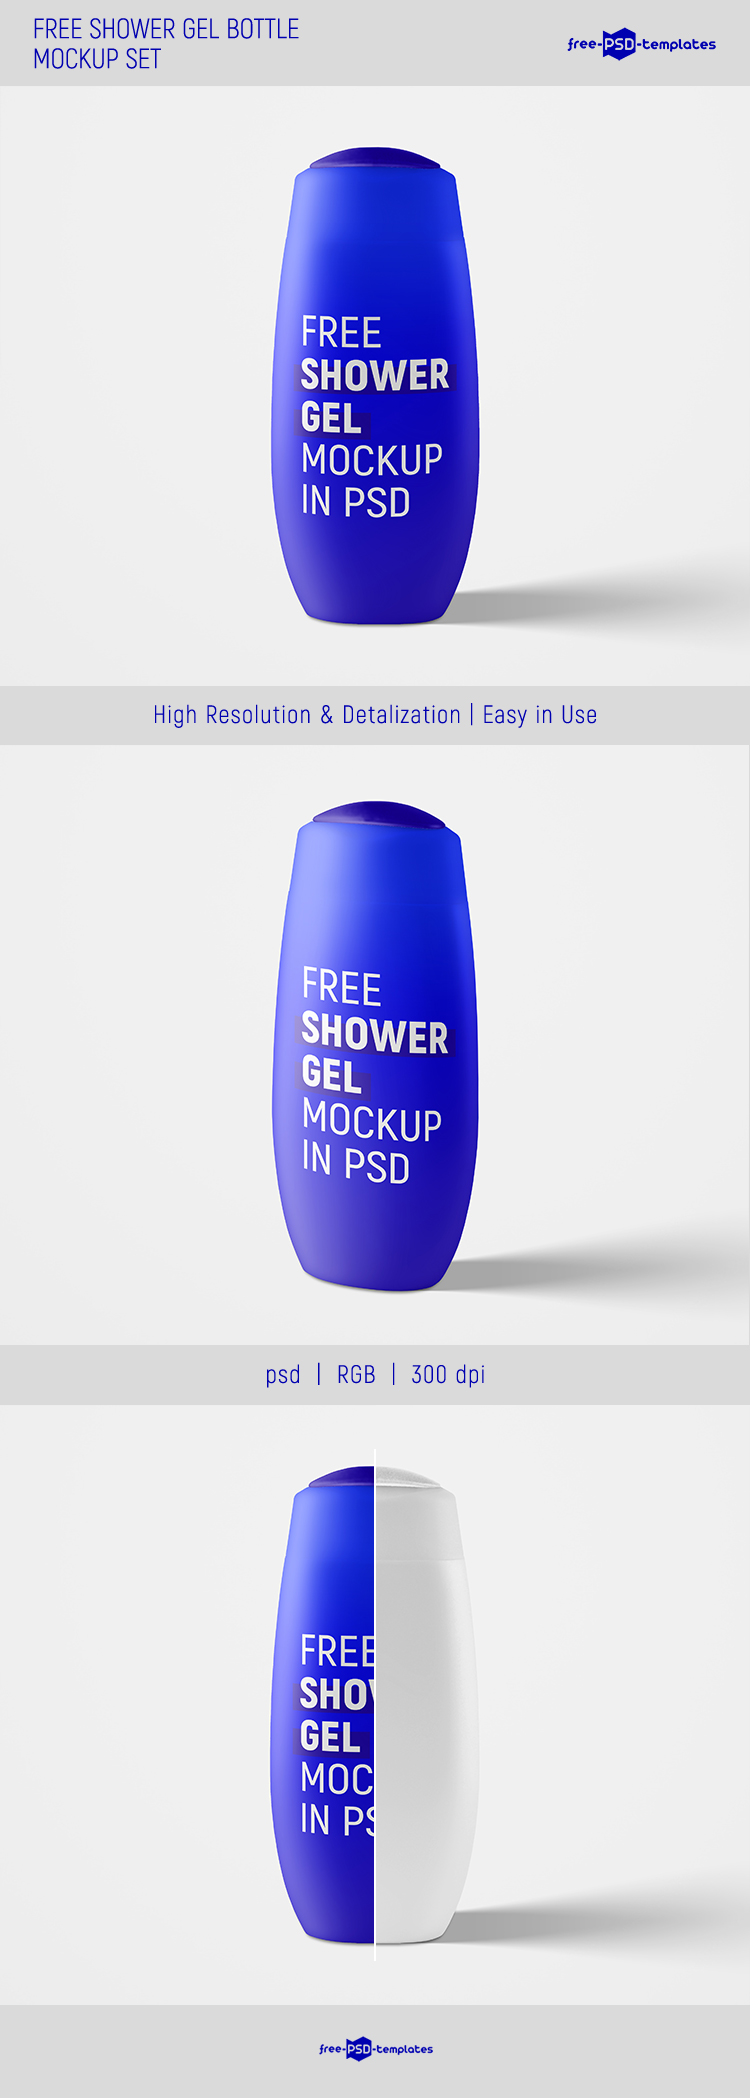 Download Free Shower Gel Bottle Mockup Set Free Psd Templates